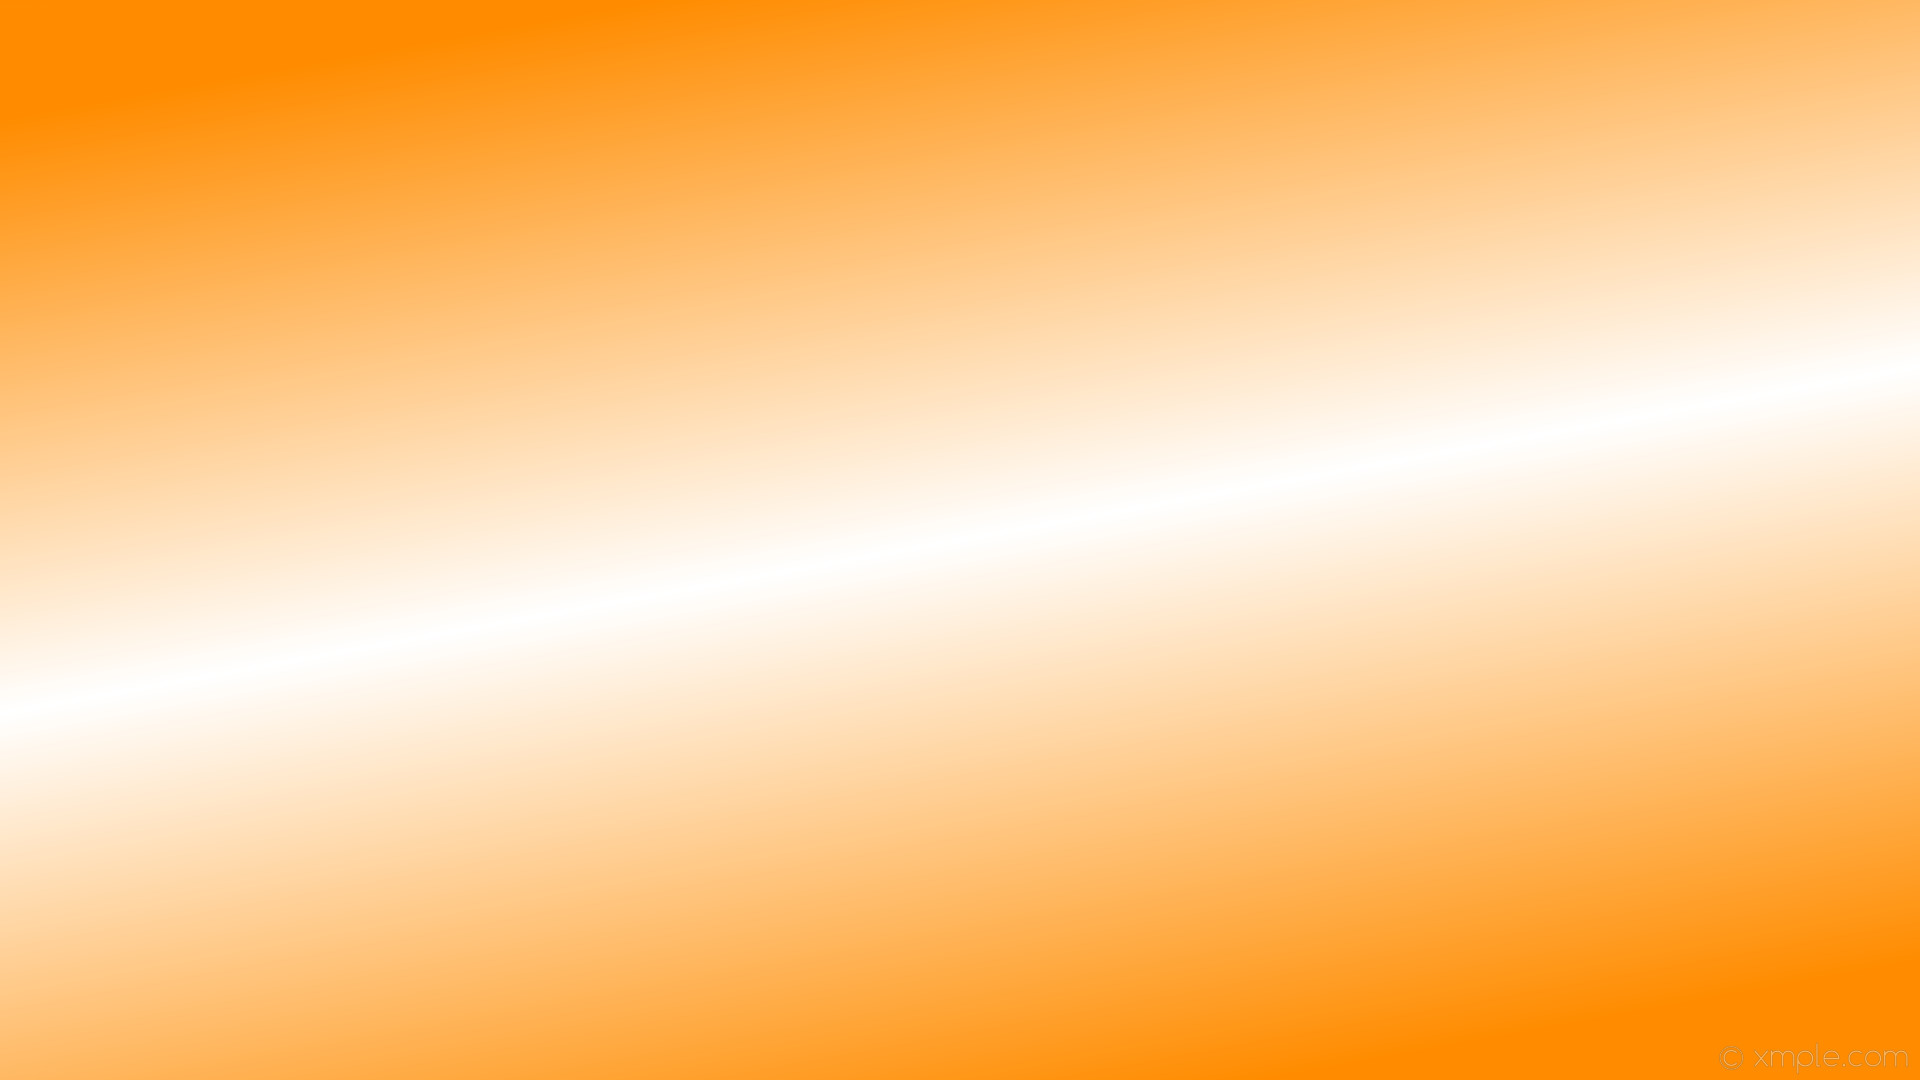 1920x1080 wallpaper highlight linear gradient orange white dark orange #ff8c00  #ffffff 120Â° 50%